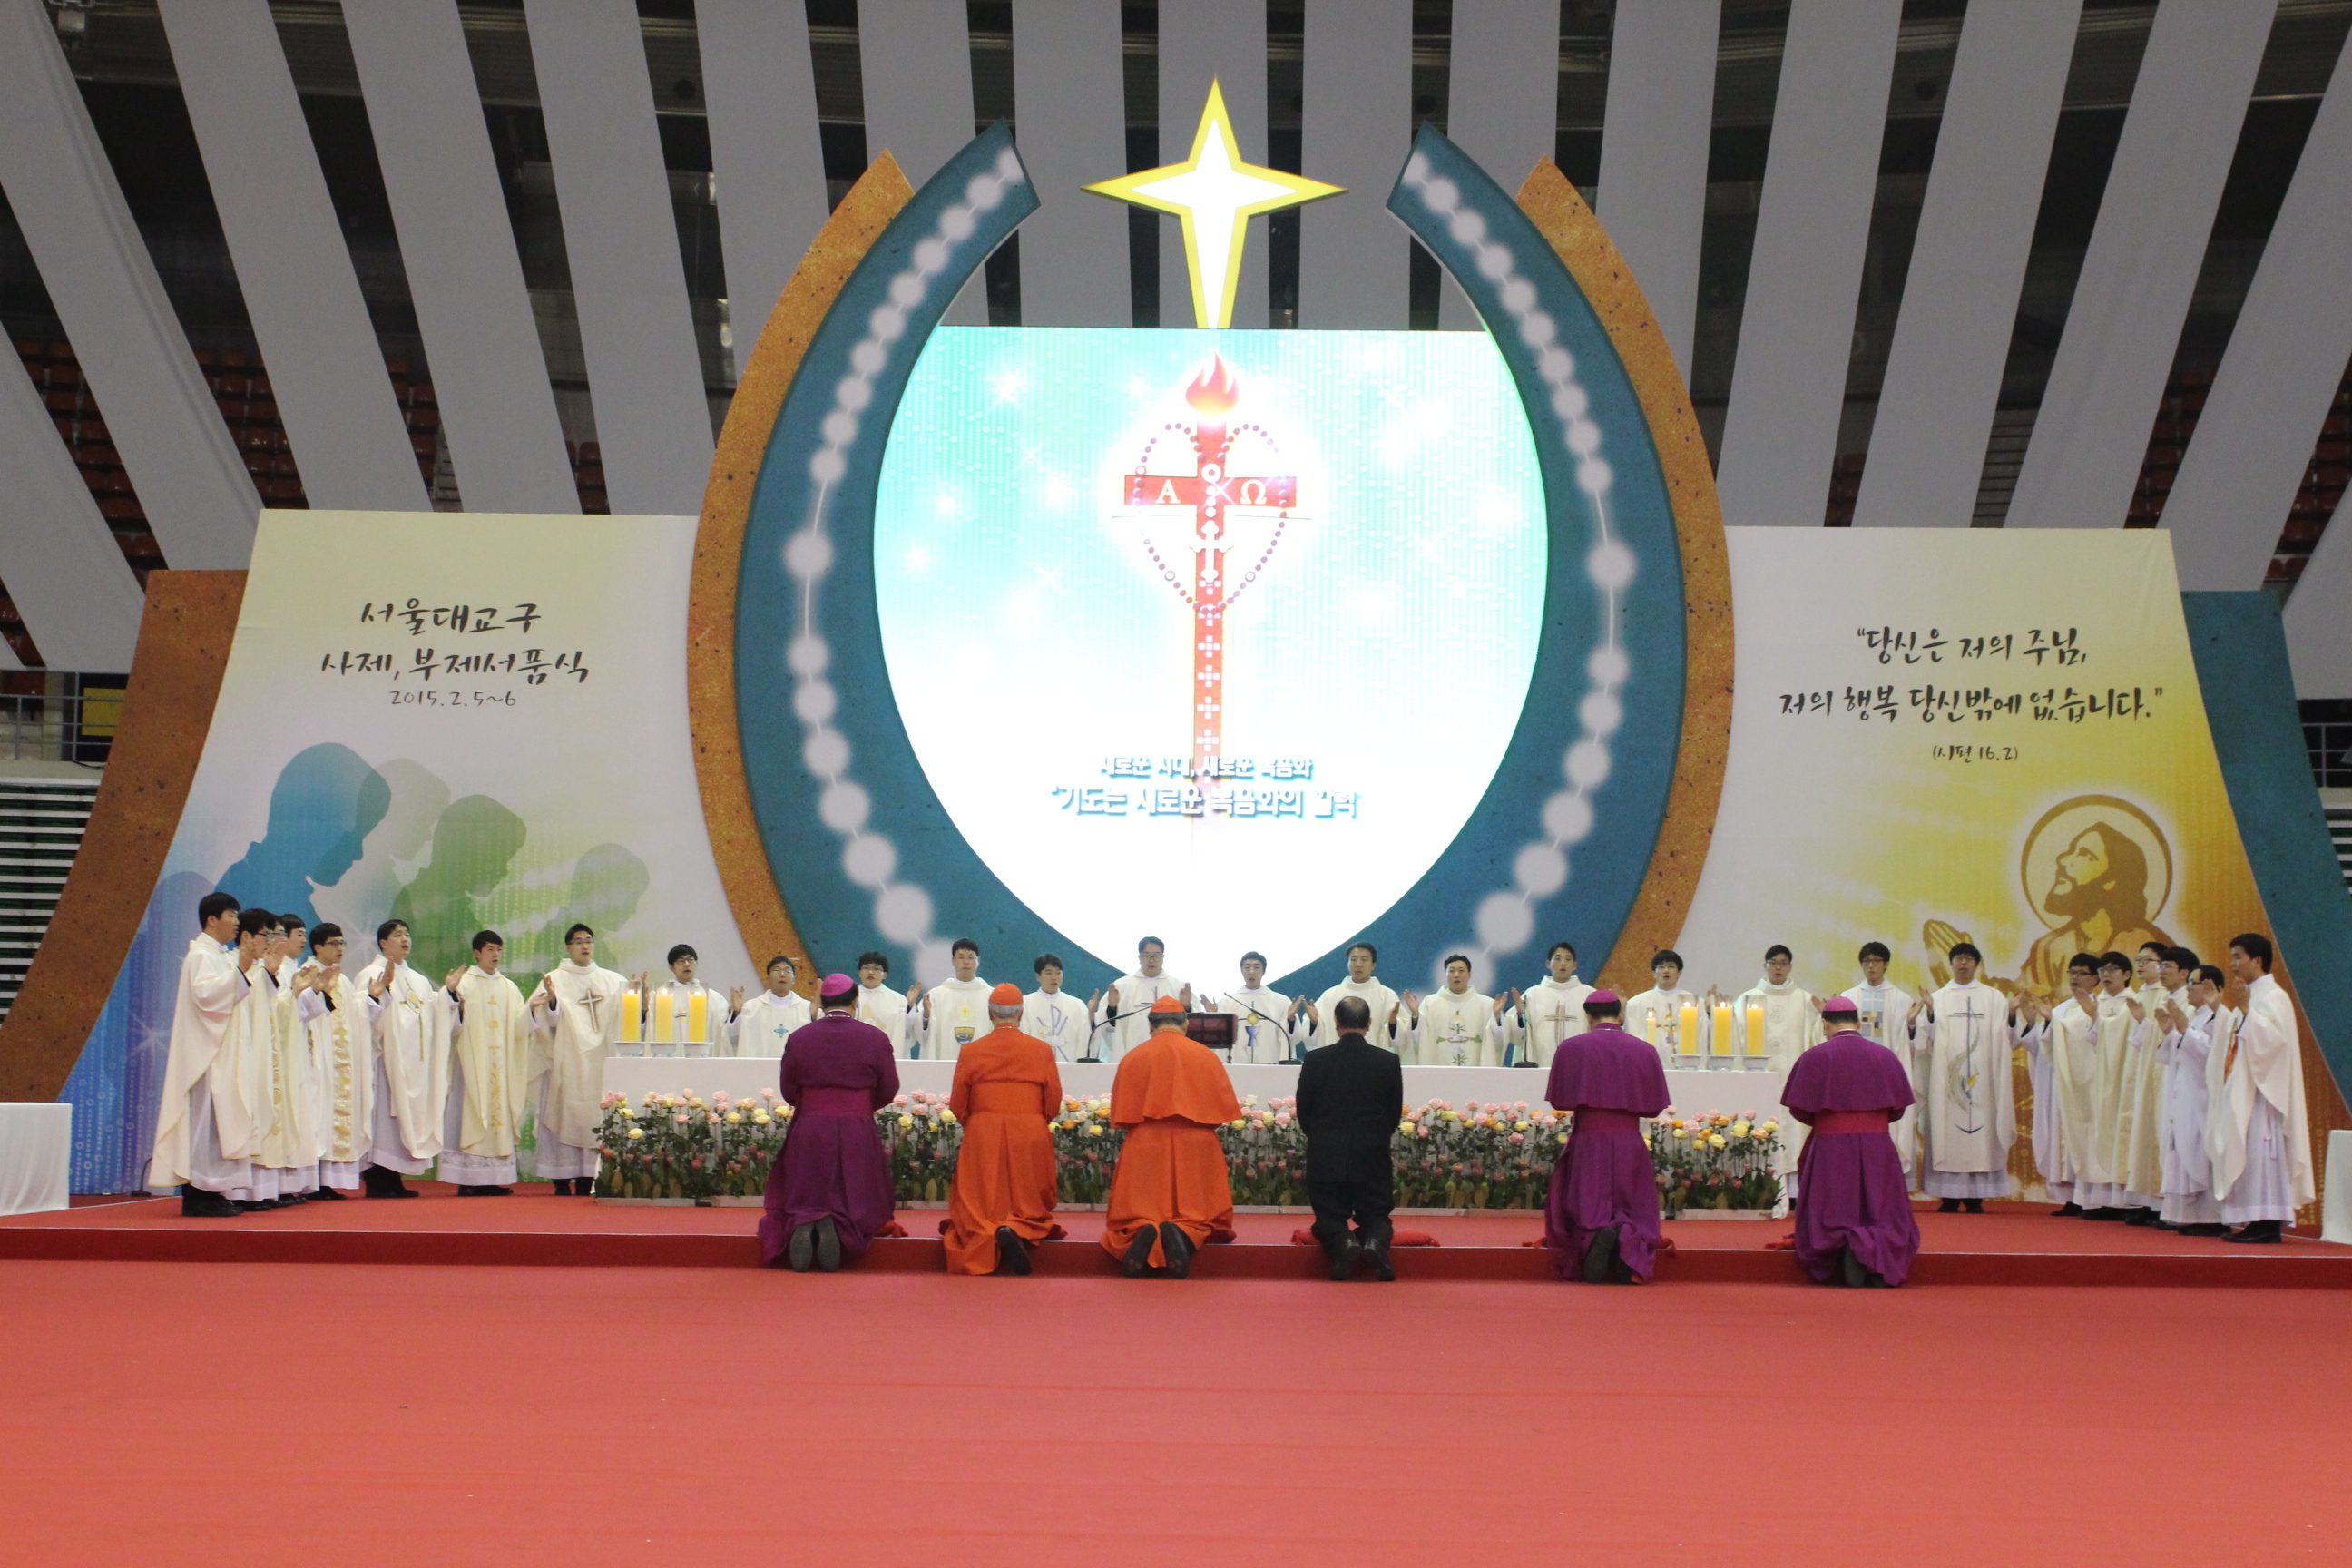 서울대교구 사제서품식(2015.2.6)의 관련된 이미지 입니다.